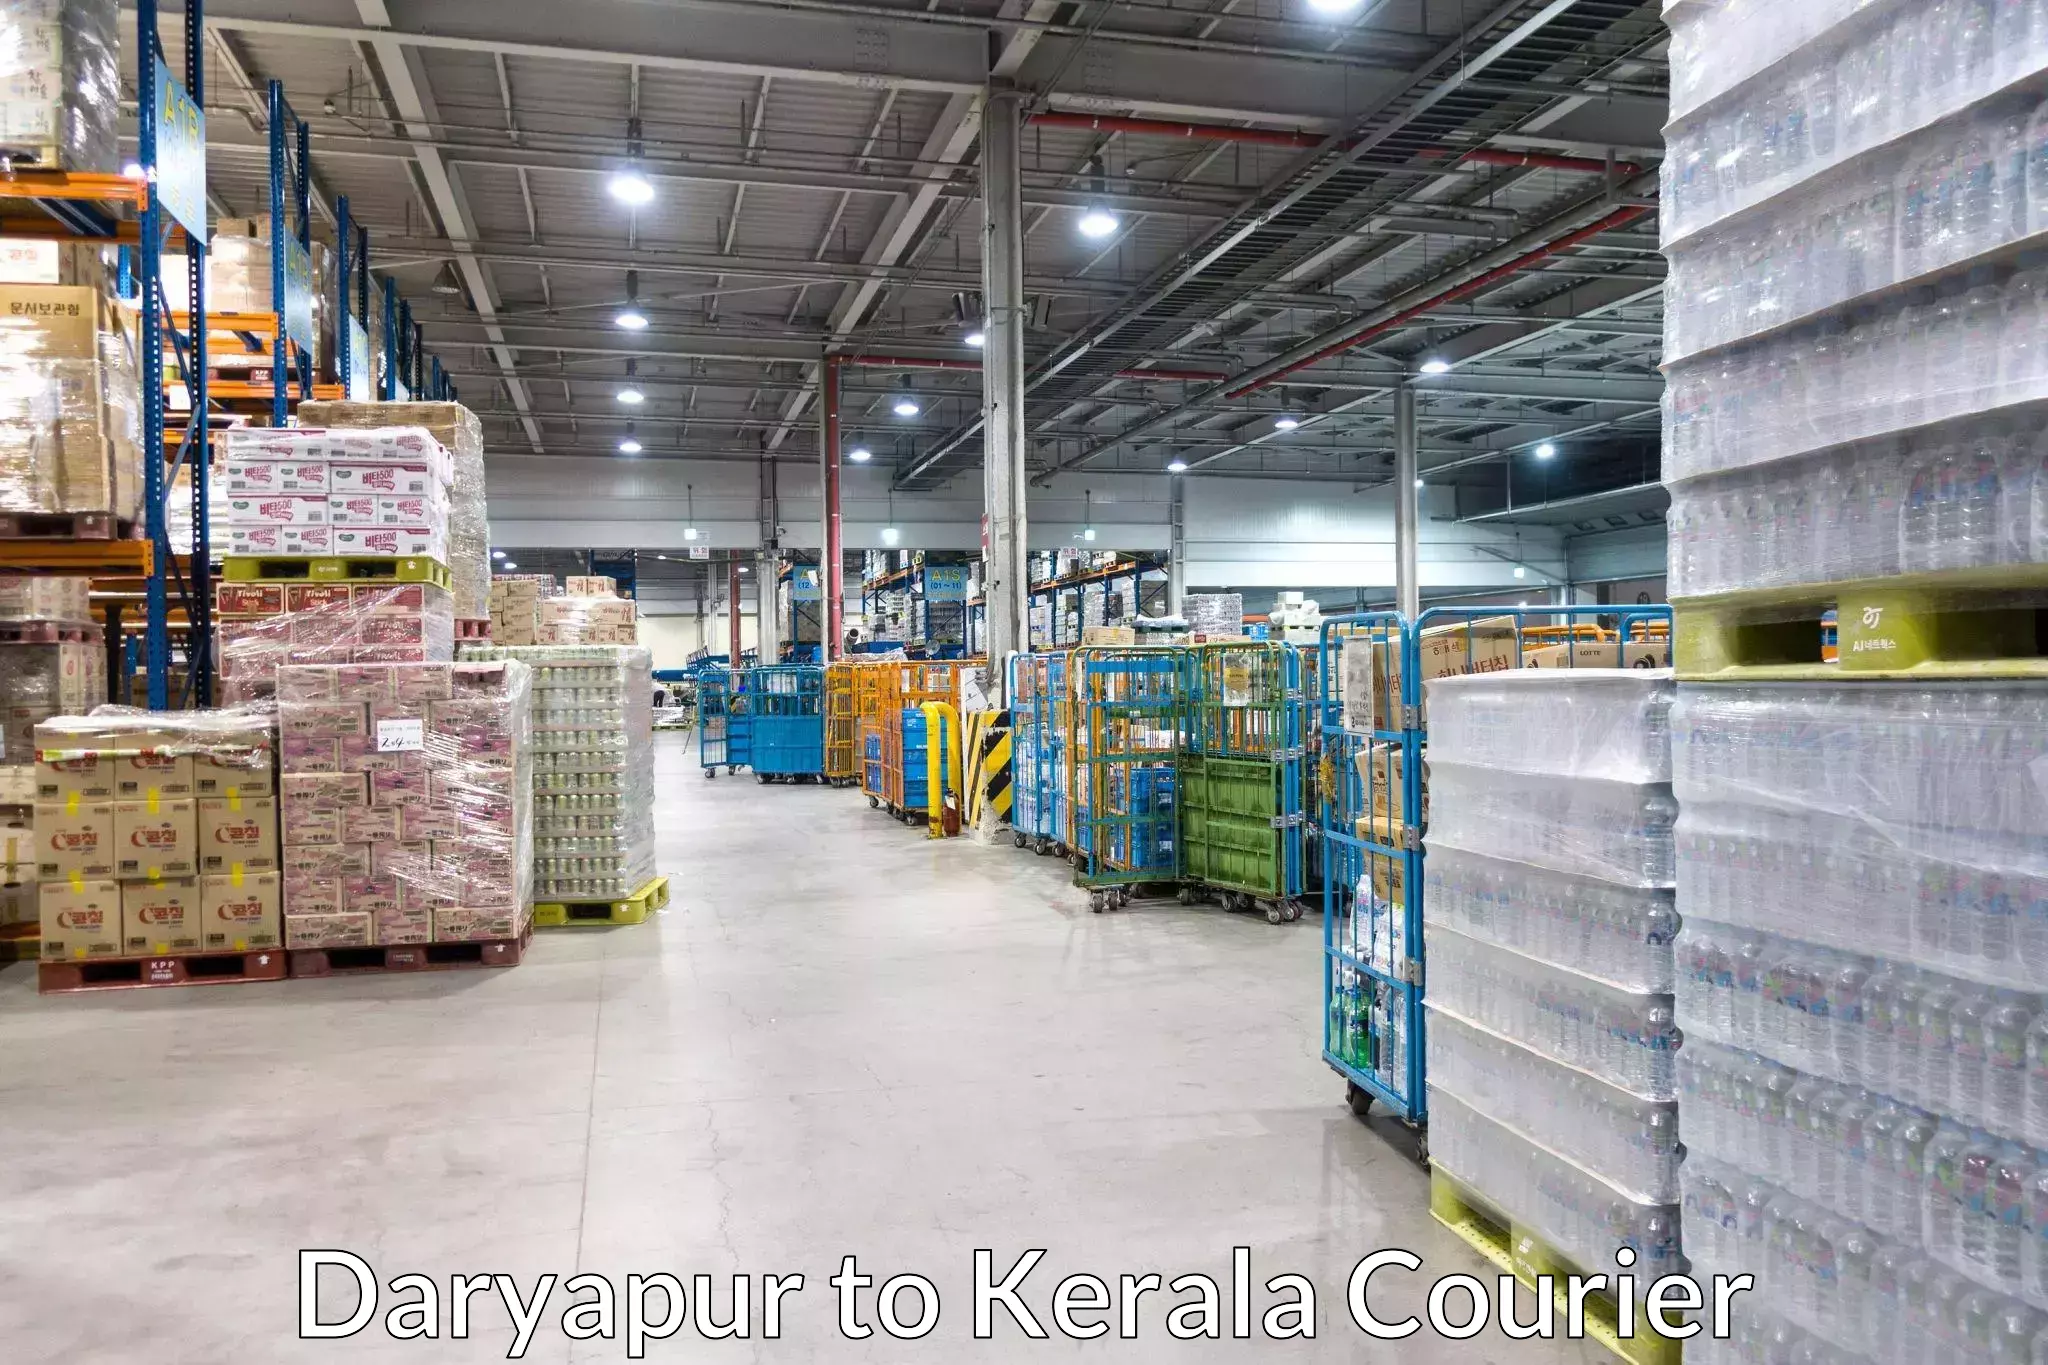 Customer-centric shipping Daryapur to Mavelikara